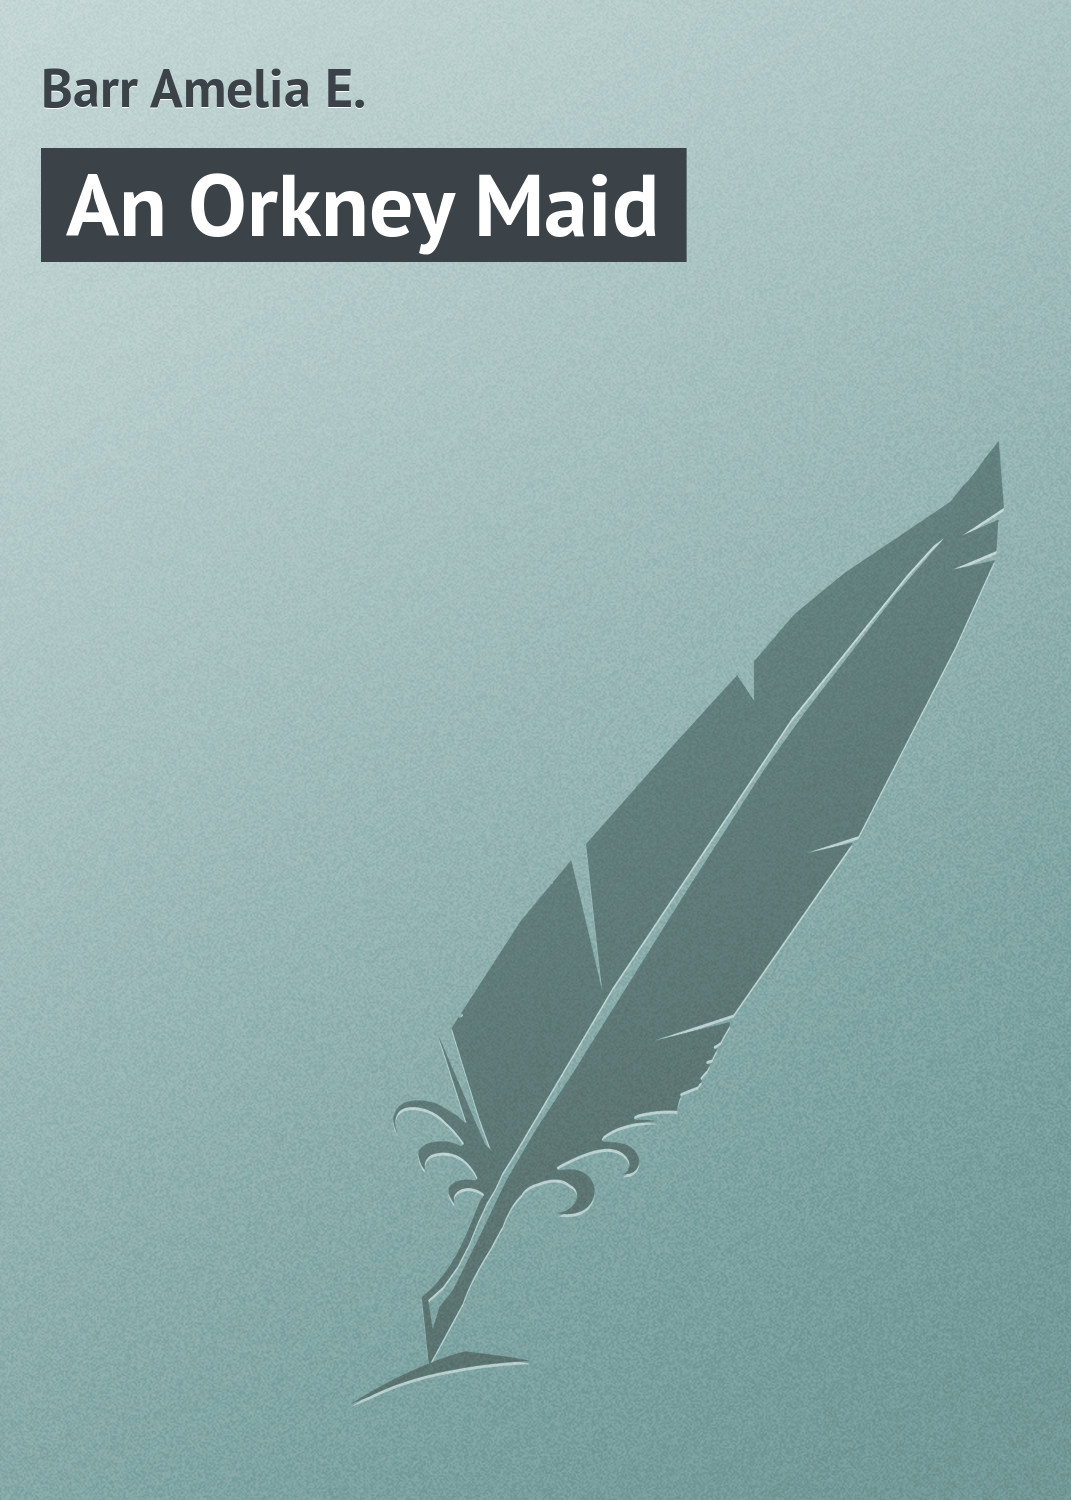 Книга An Orkney Maid из серии , созданная Amelia Barr, может относится к жанру Зарубежная классика. Стоимость электронной книги An Orkney Maid с идентификатором 23164611 составляет 5.99 руб.